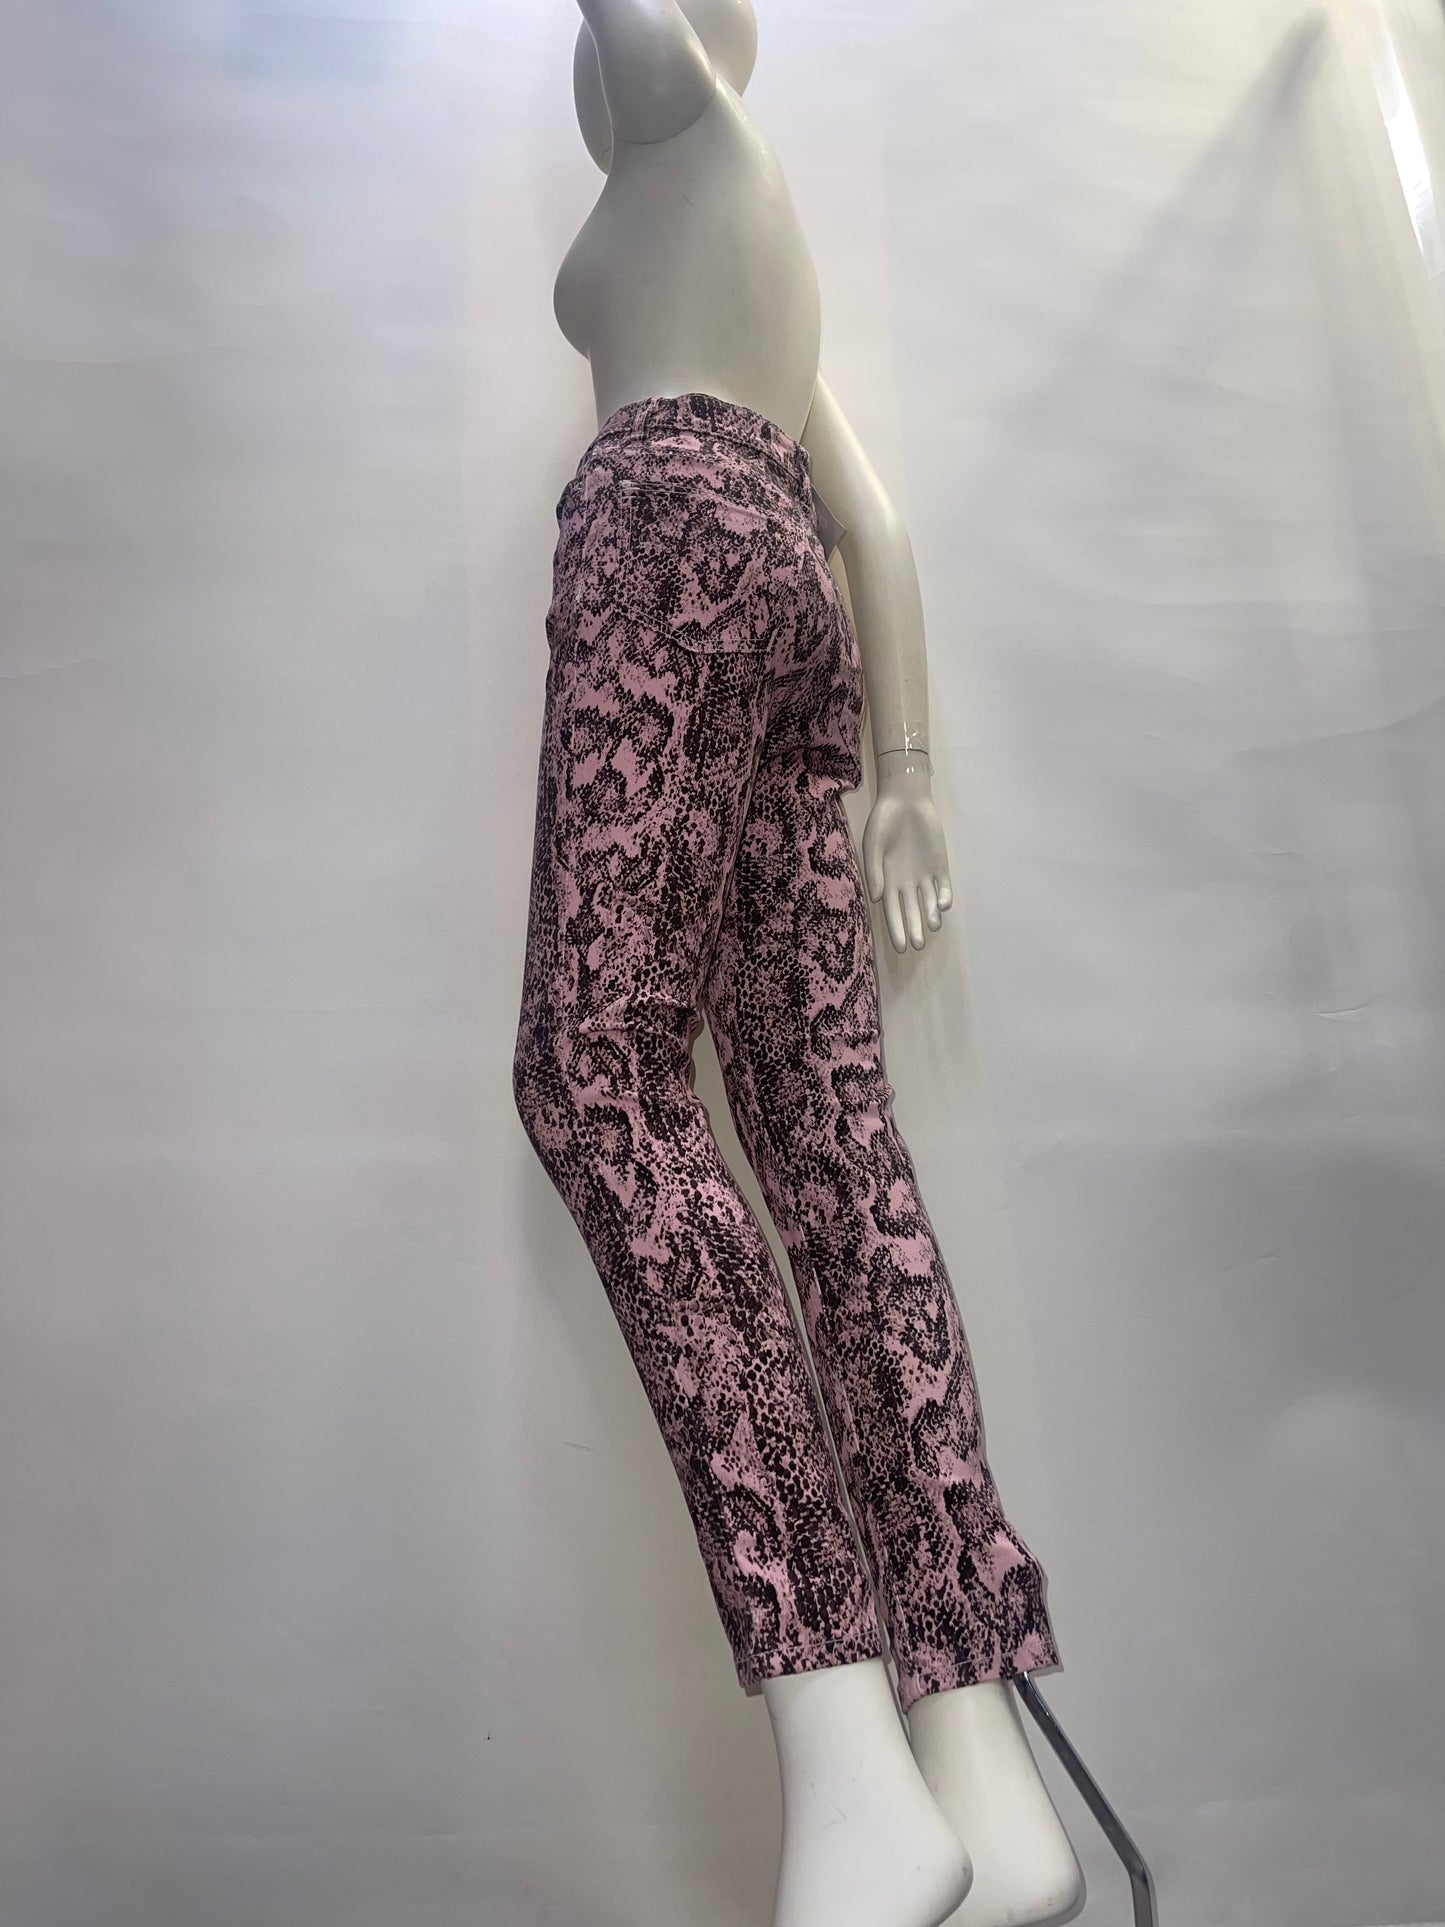 BDG Pink Snakeskin Patterned Pants (Size 26)